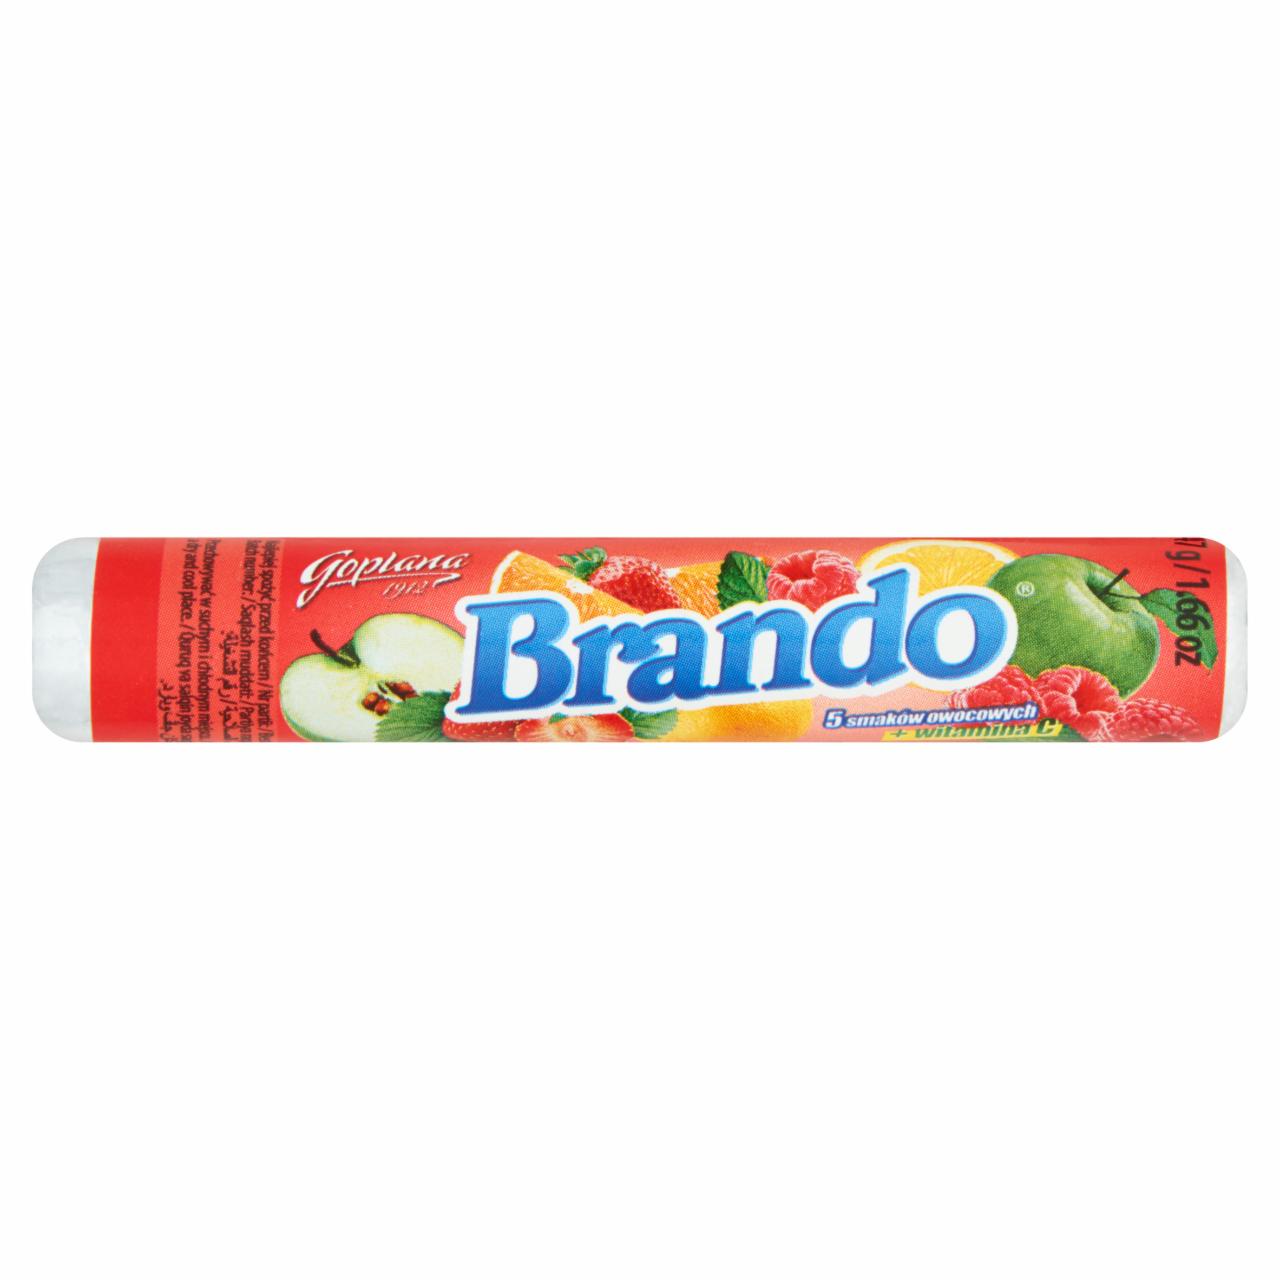 Zdjęcia - Goplana Brando 5 smaków owocowych Karmelki twarde 47 g